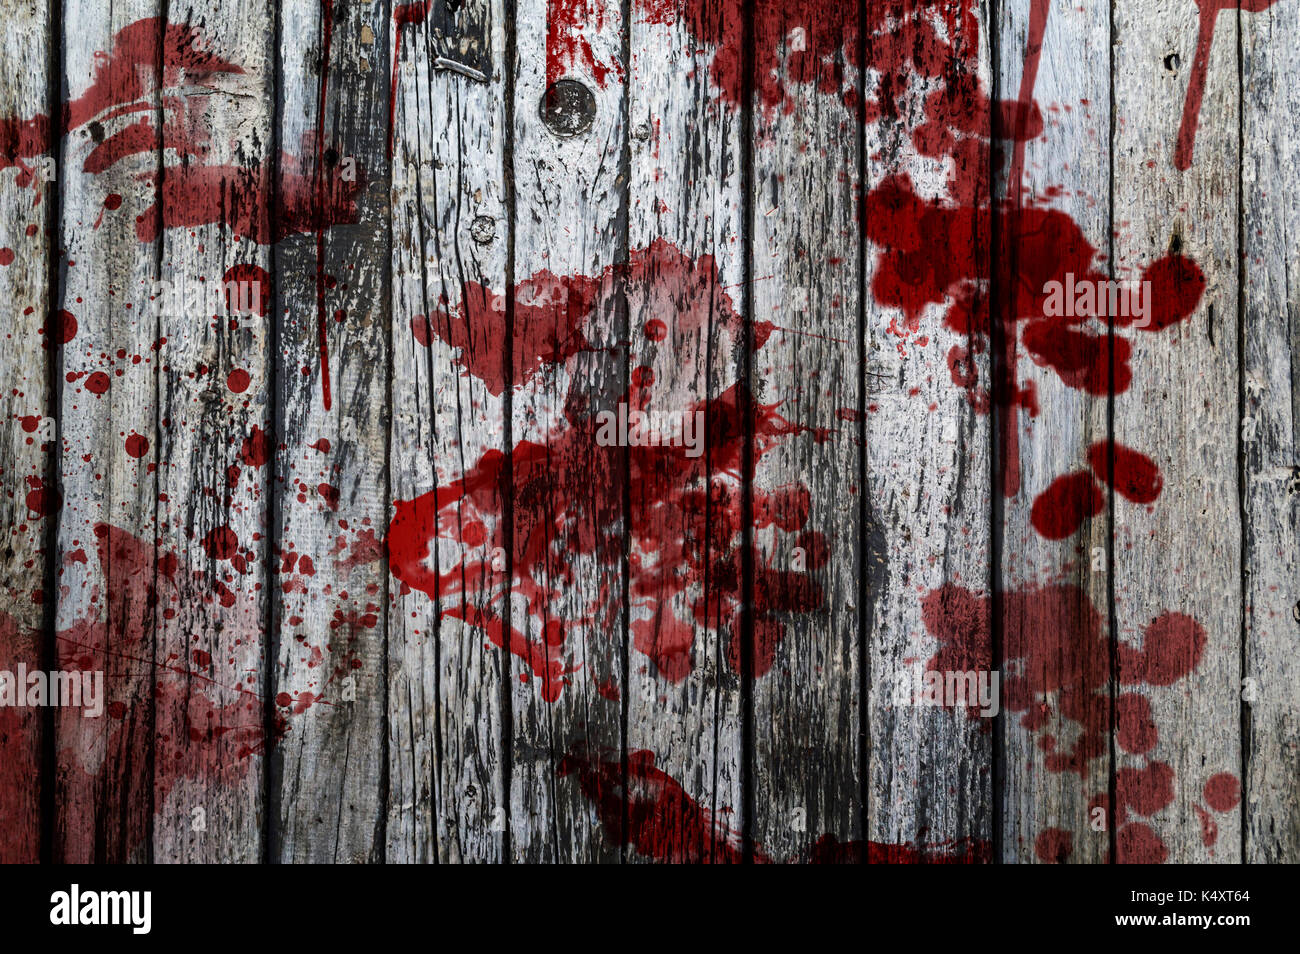 bloody crime scene wallpaper